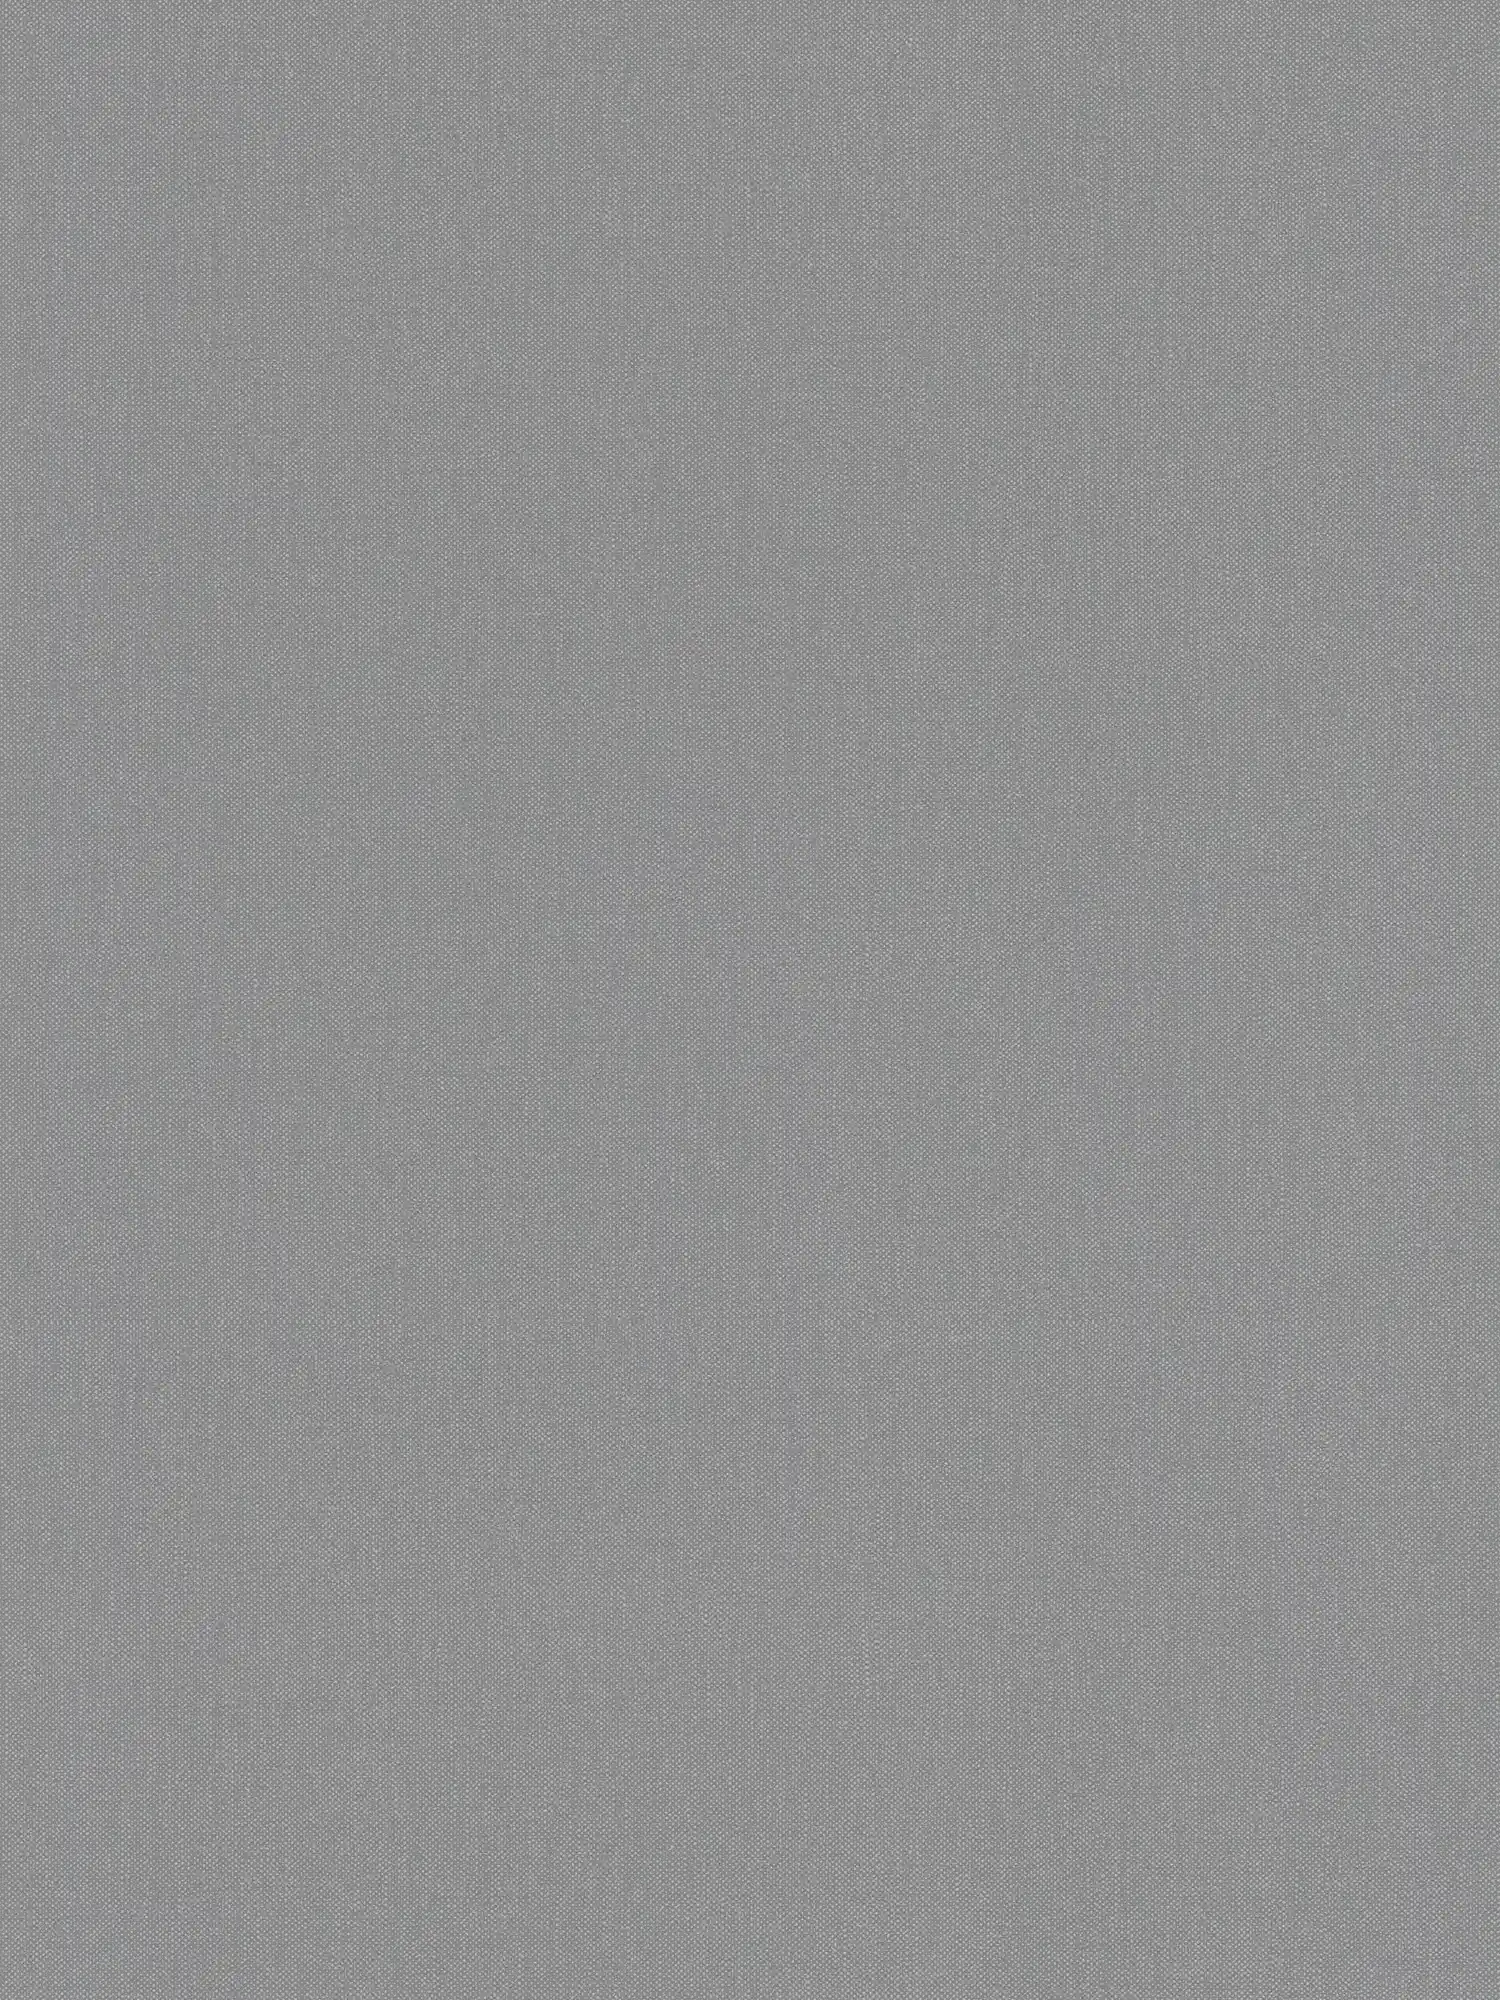 Leinenoptik Tapete mit Strukturmuster in elegantem Grau
